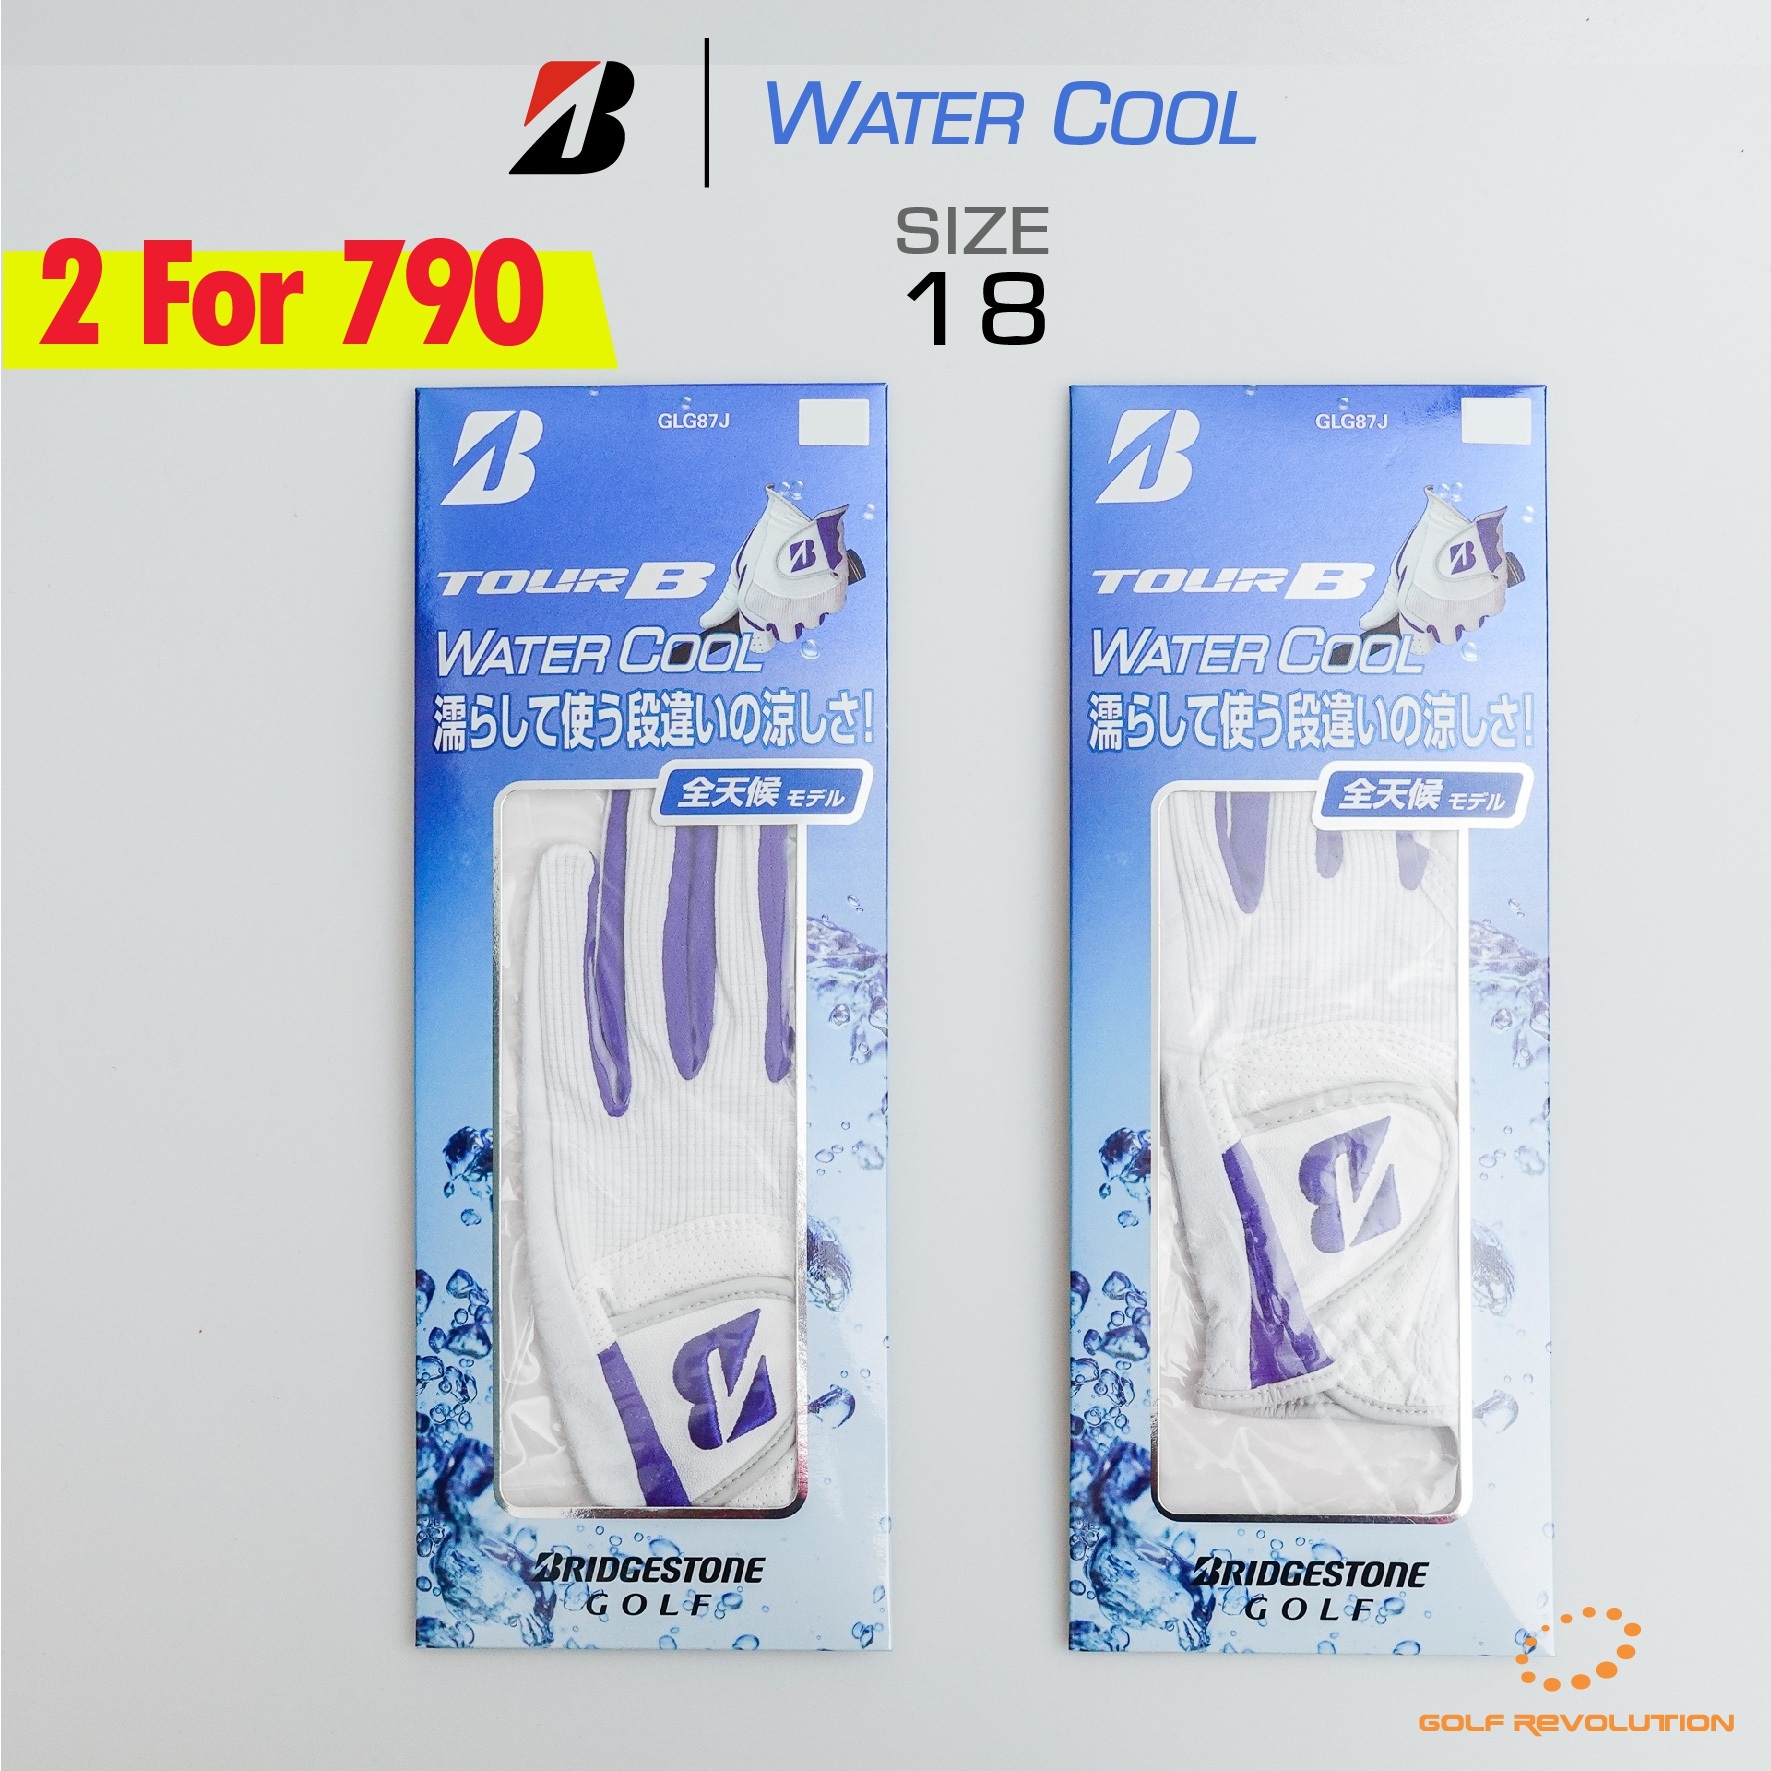 ถุงมือกอล์ฟผู้ชาย Bridgestone Tour B Water Cool WH (GLG87J) ( 1 Pack, 2 Pcs.)